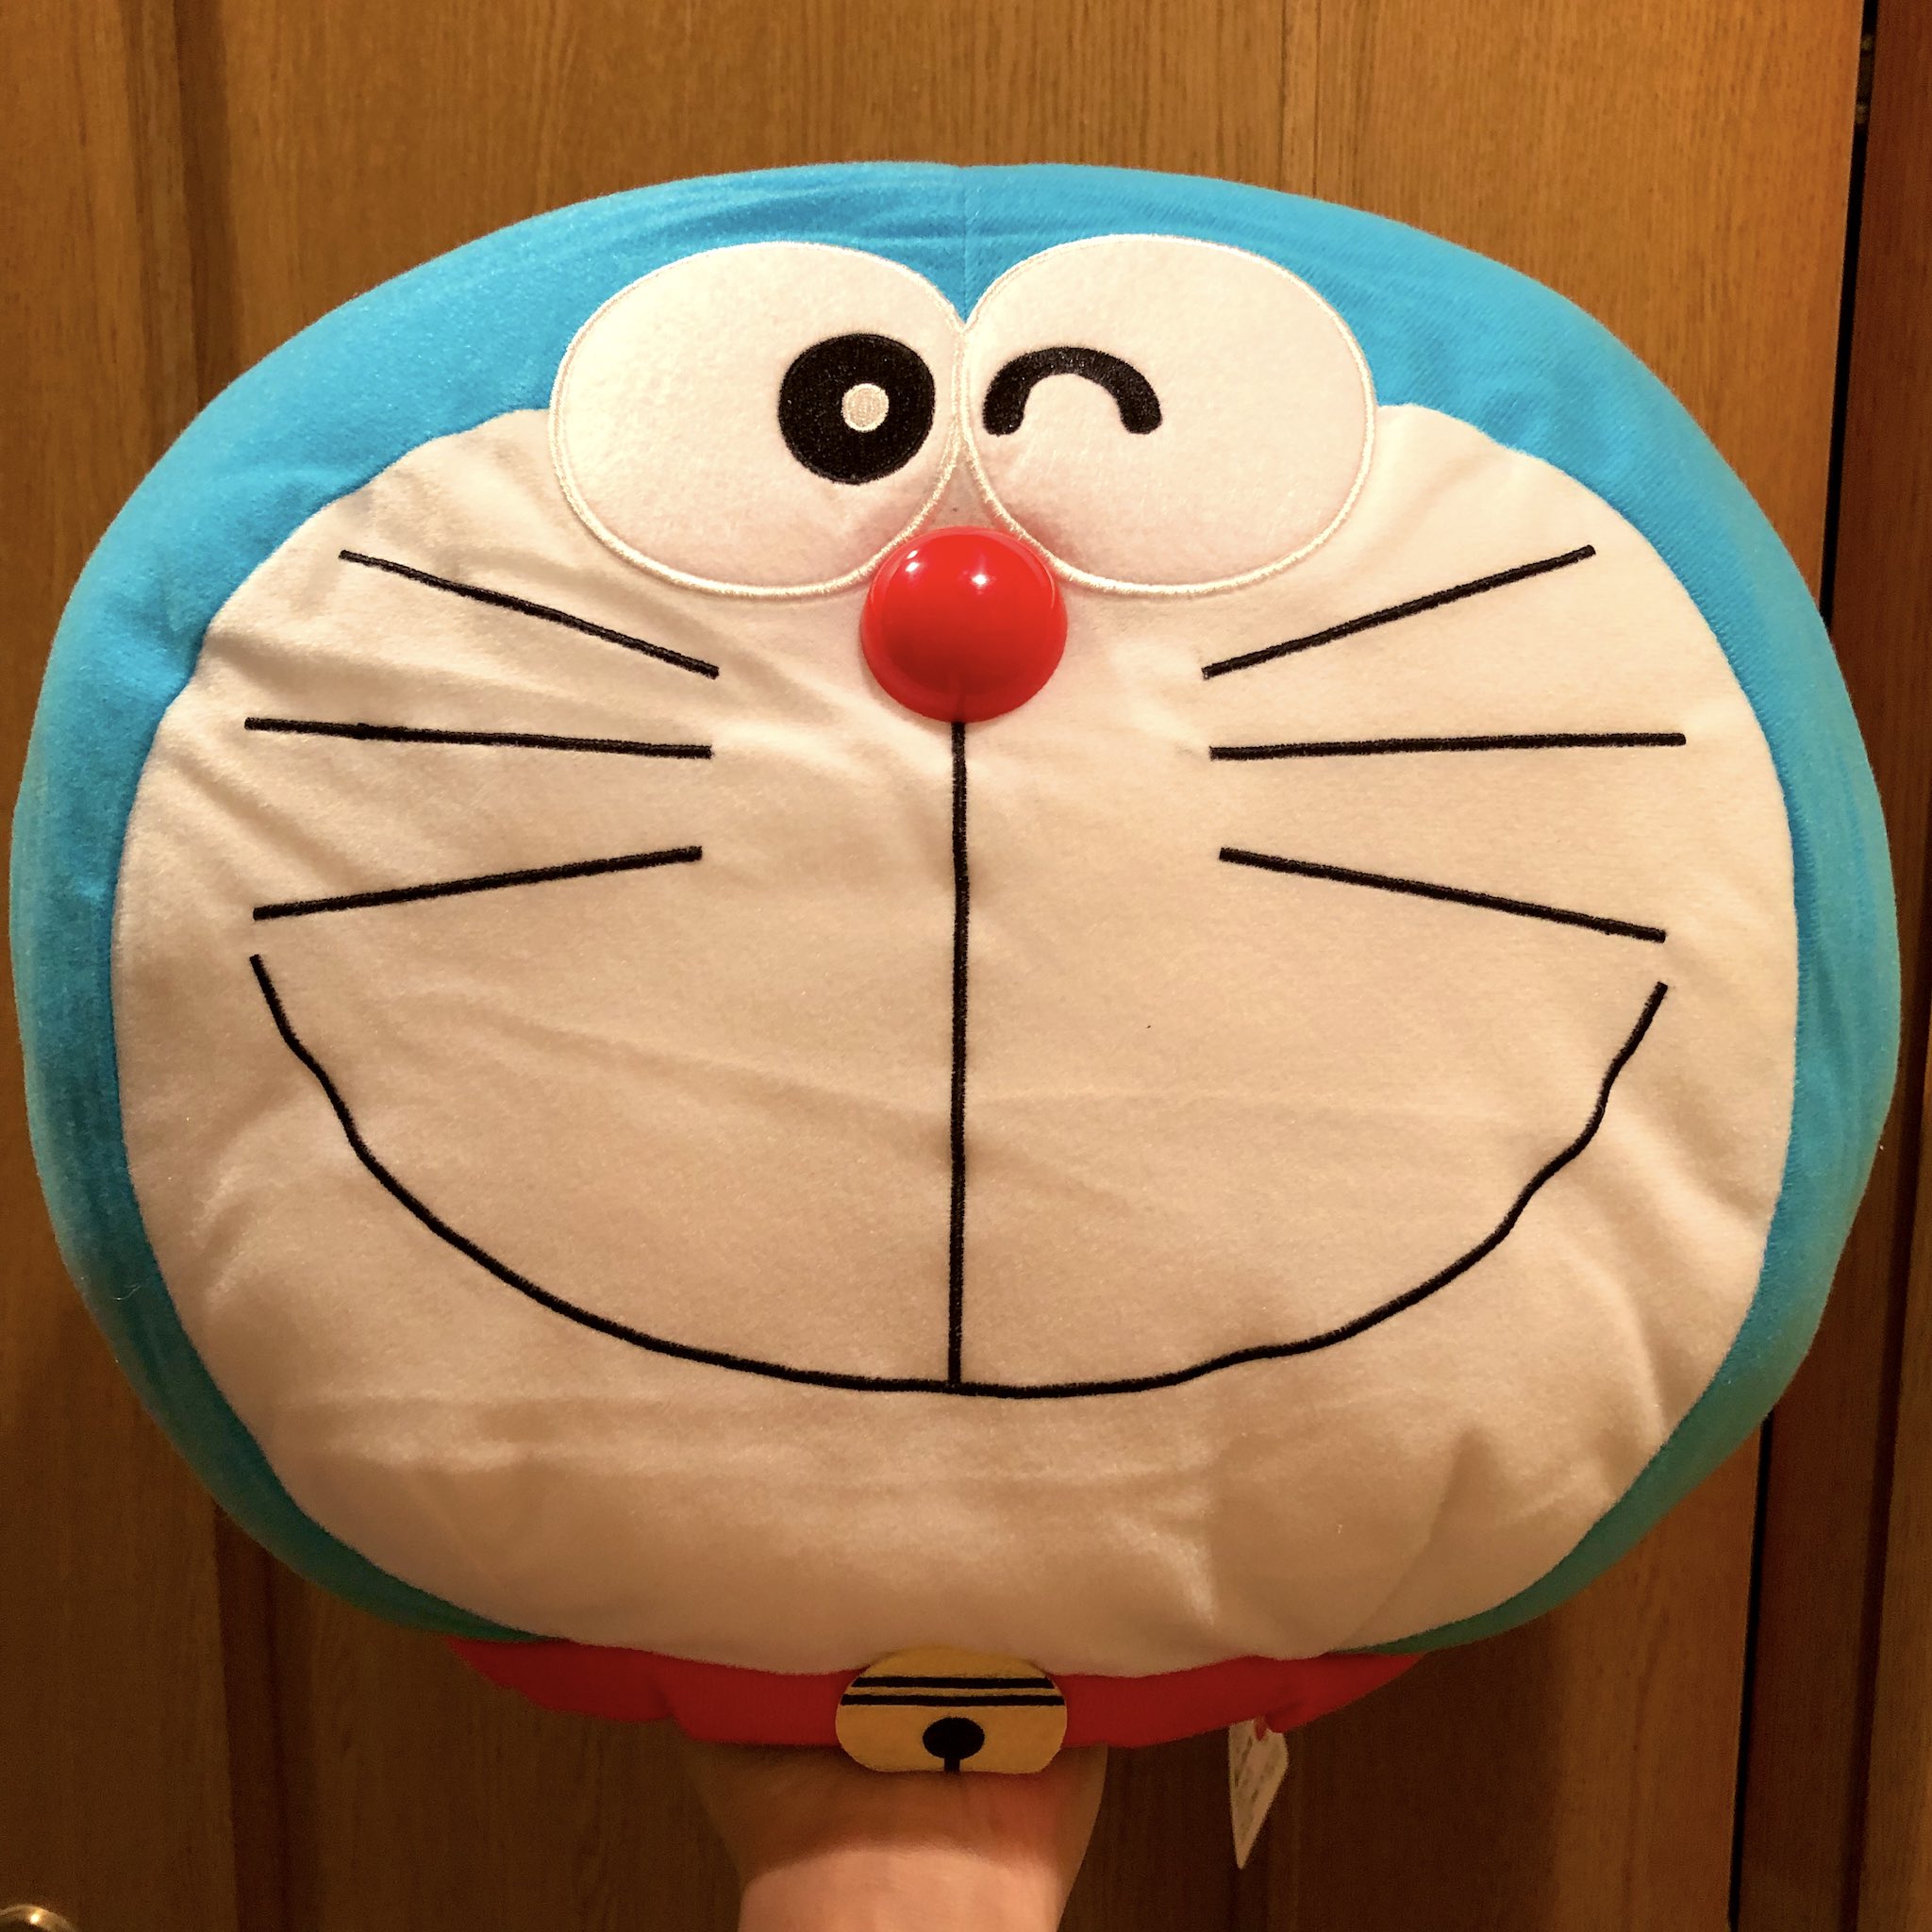 トモえもん Sf 今日のドラえもん放送のアルマジロンのドラえもんのような顔だけのぬいぐるみをクローゼットから出したよ これ結構デカイのよ ほぼ生首ですwww Doraemon ドラえもん T Co Jv5d4ibvet Twitter